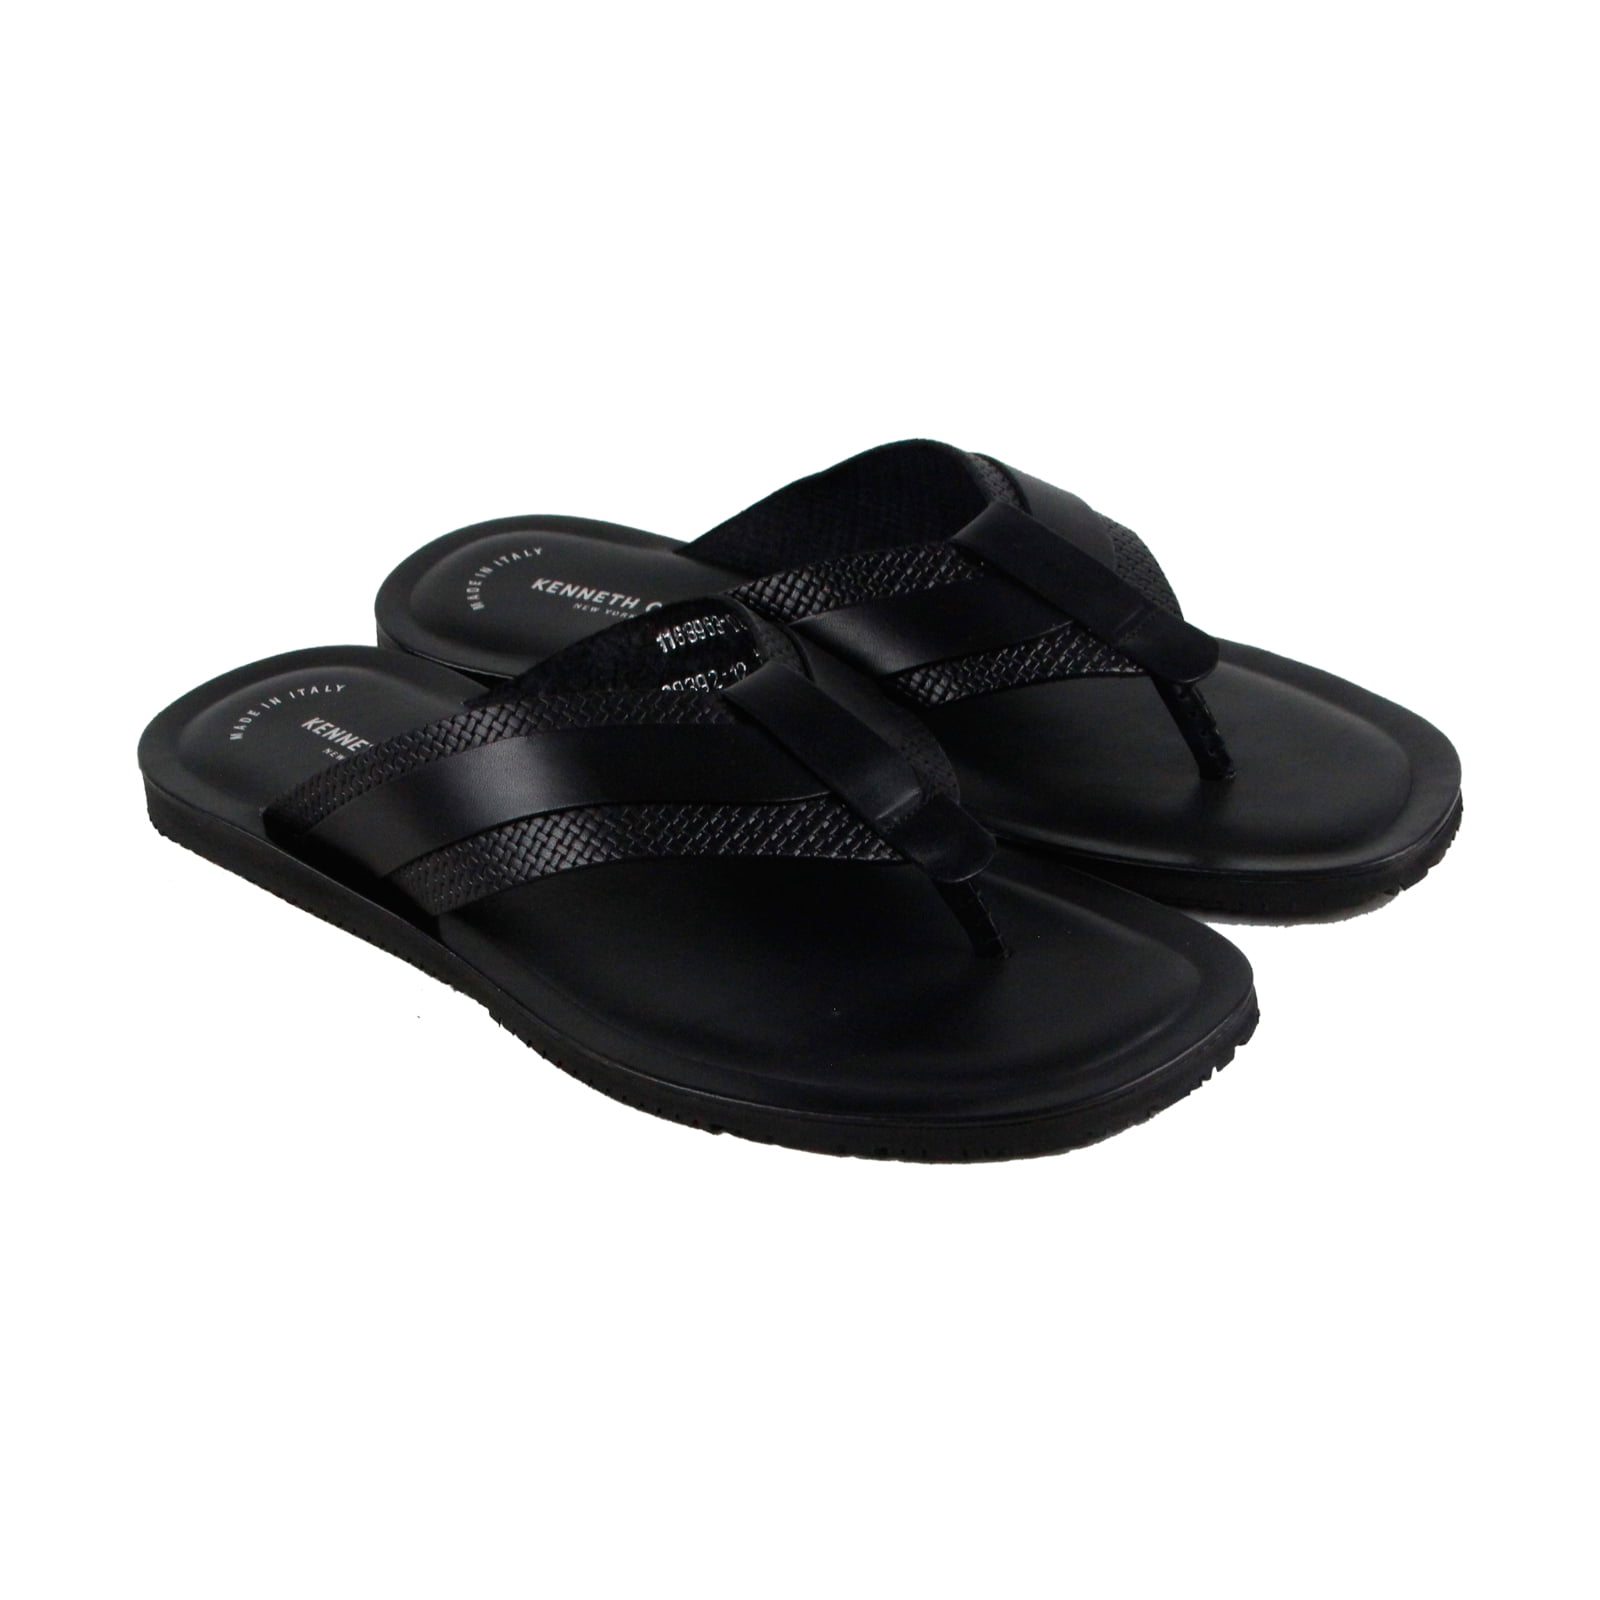 Kenneth Cole - Kenneth Cole Design 108392 Mens Black Leather Flip Flops Sandals Shoes - Walmart 